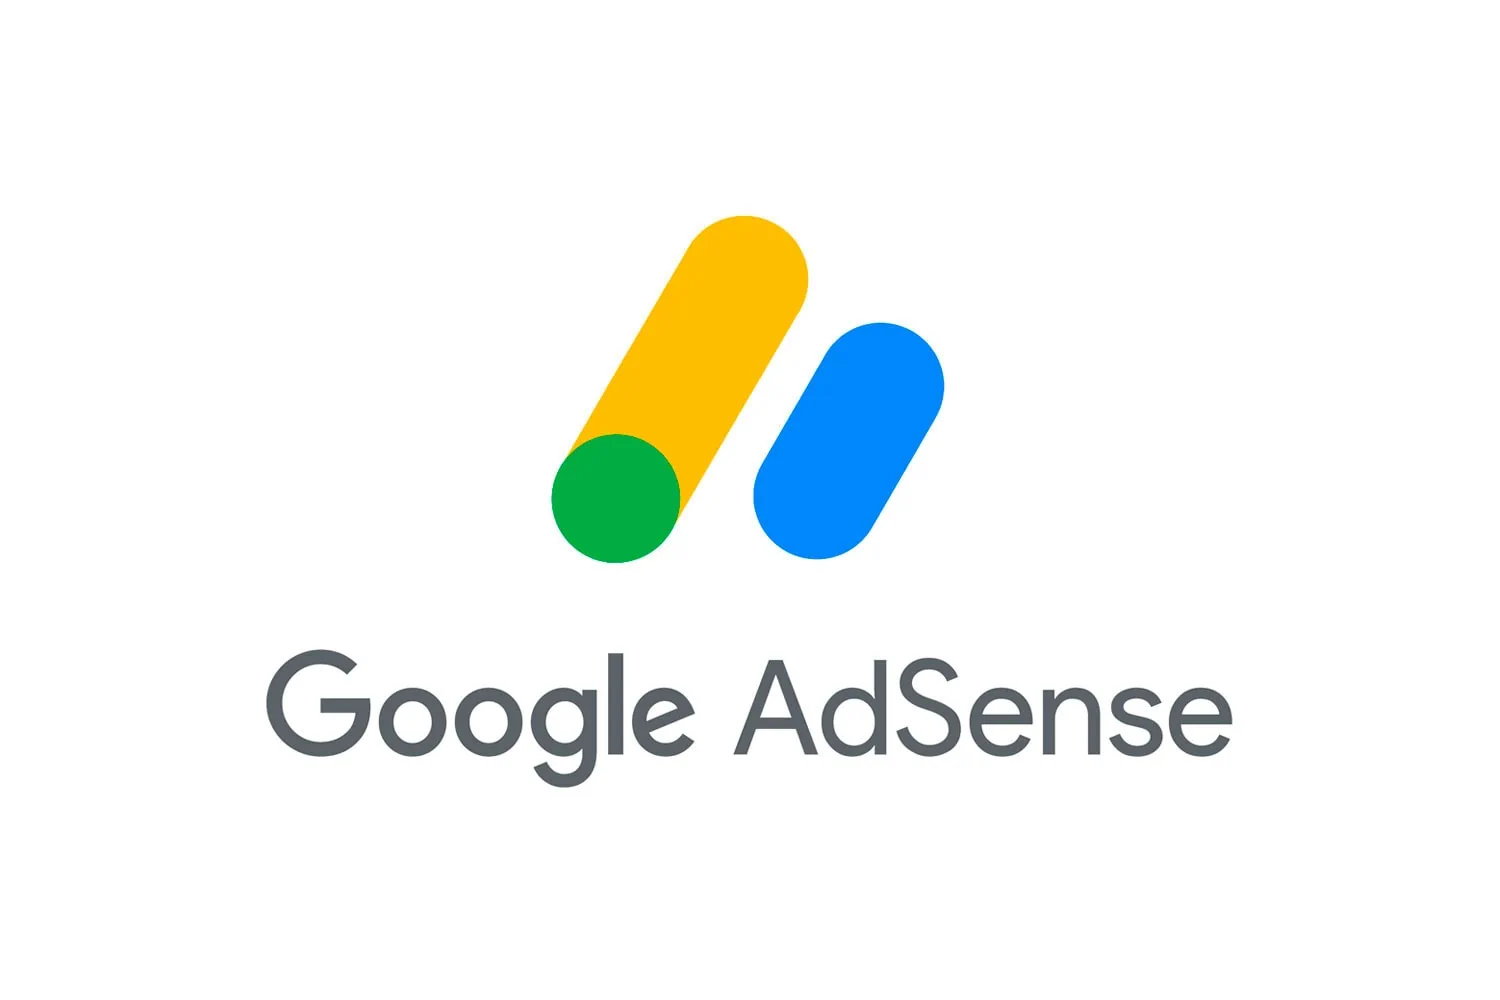 Le logo Google Adsense sur fond blanc.